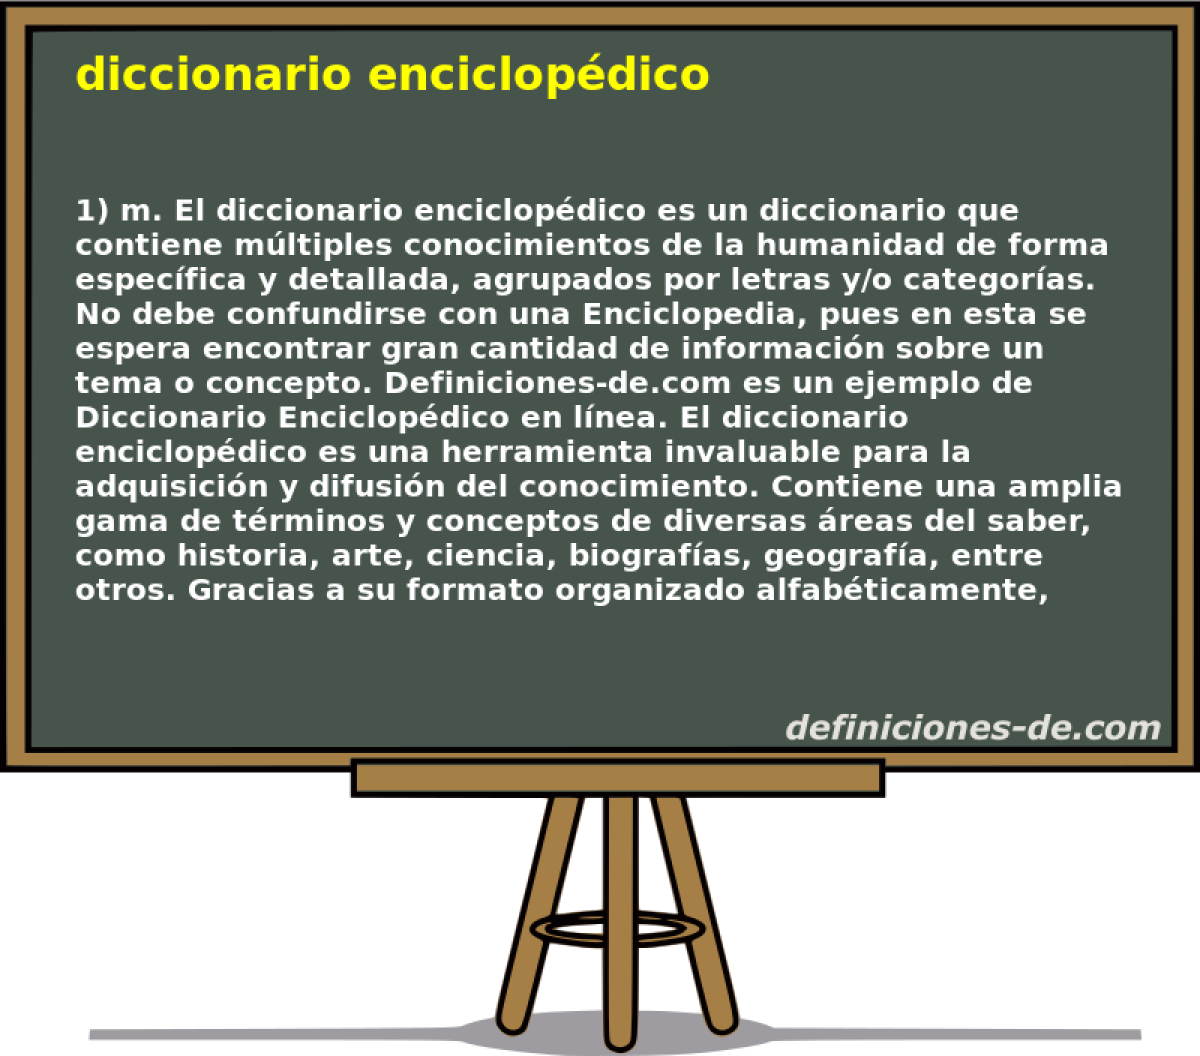 diccionario enciclopdico 